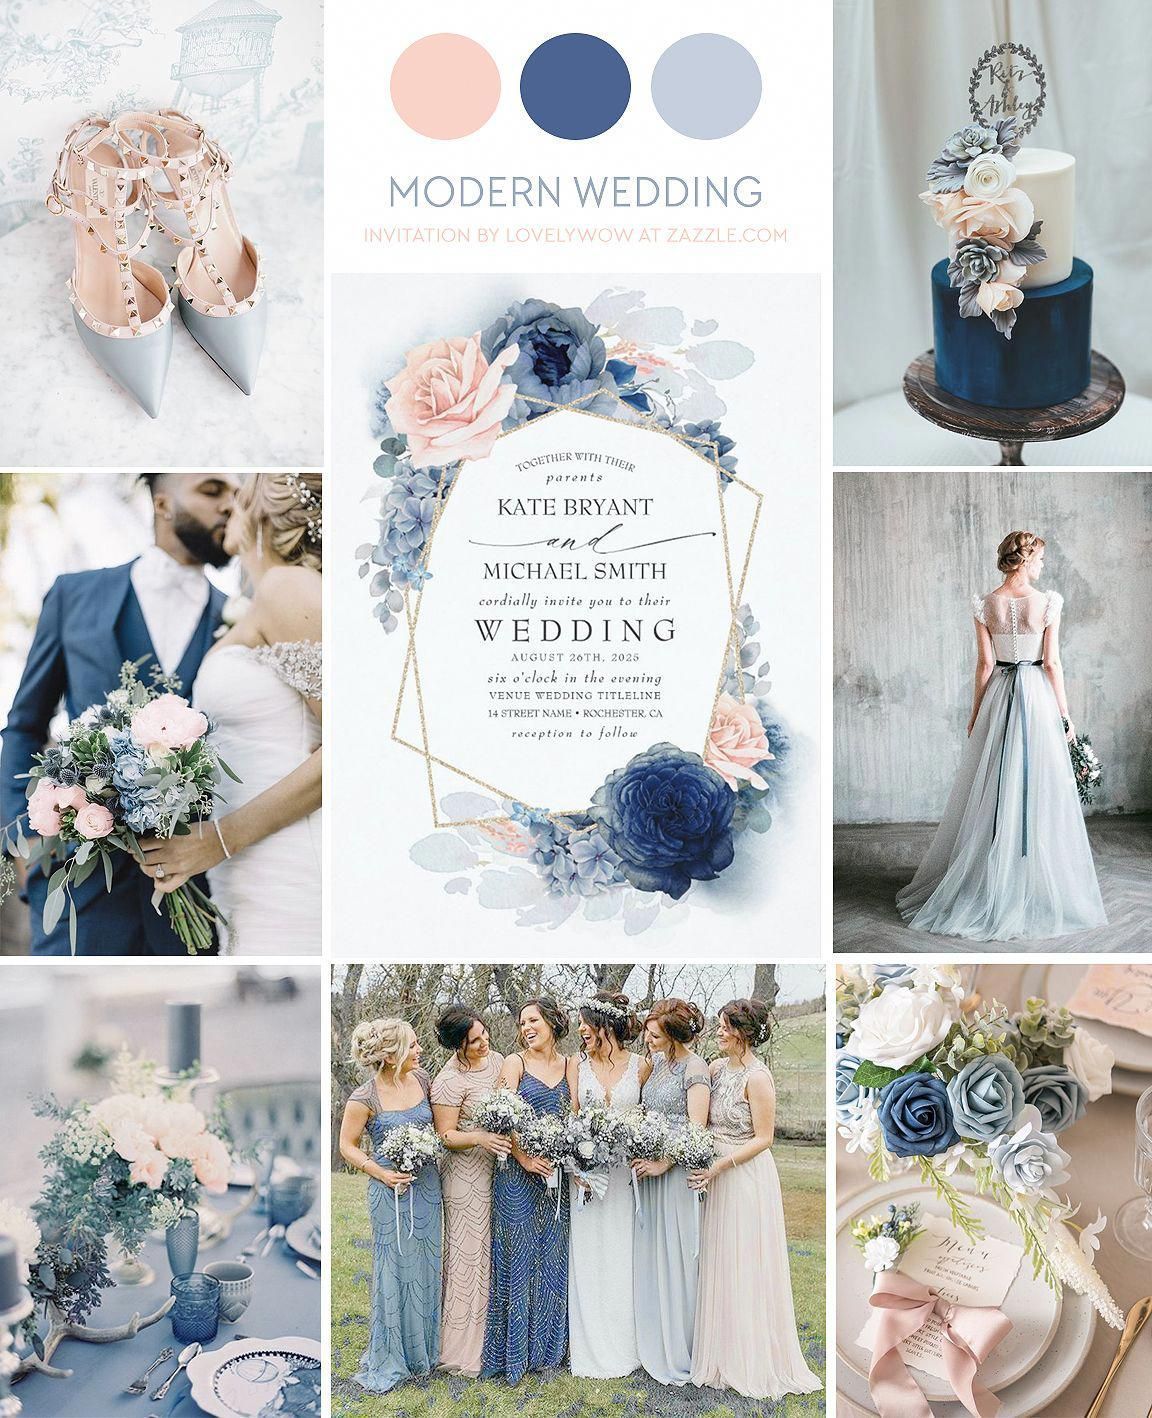 15 wedding Blue arch ideas